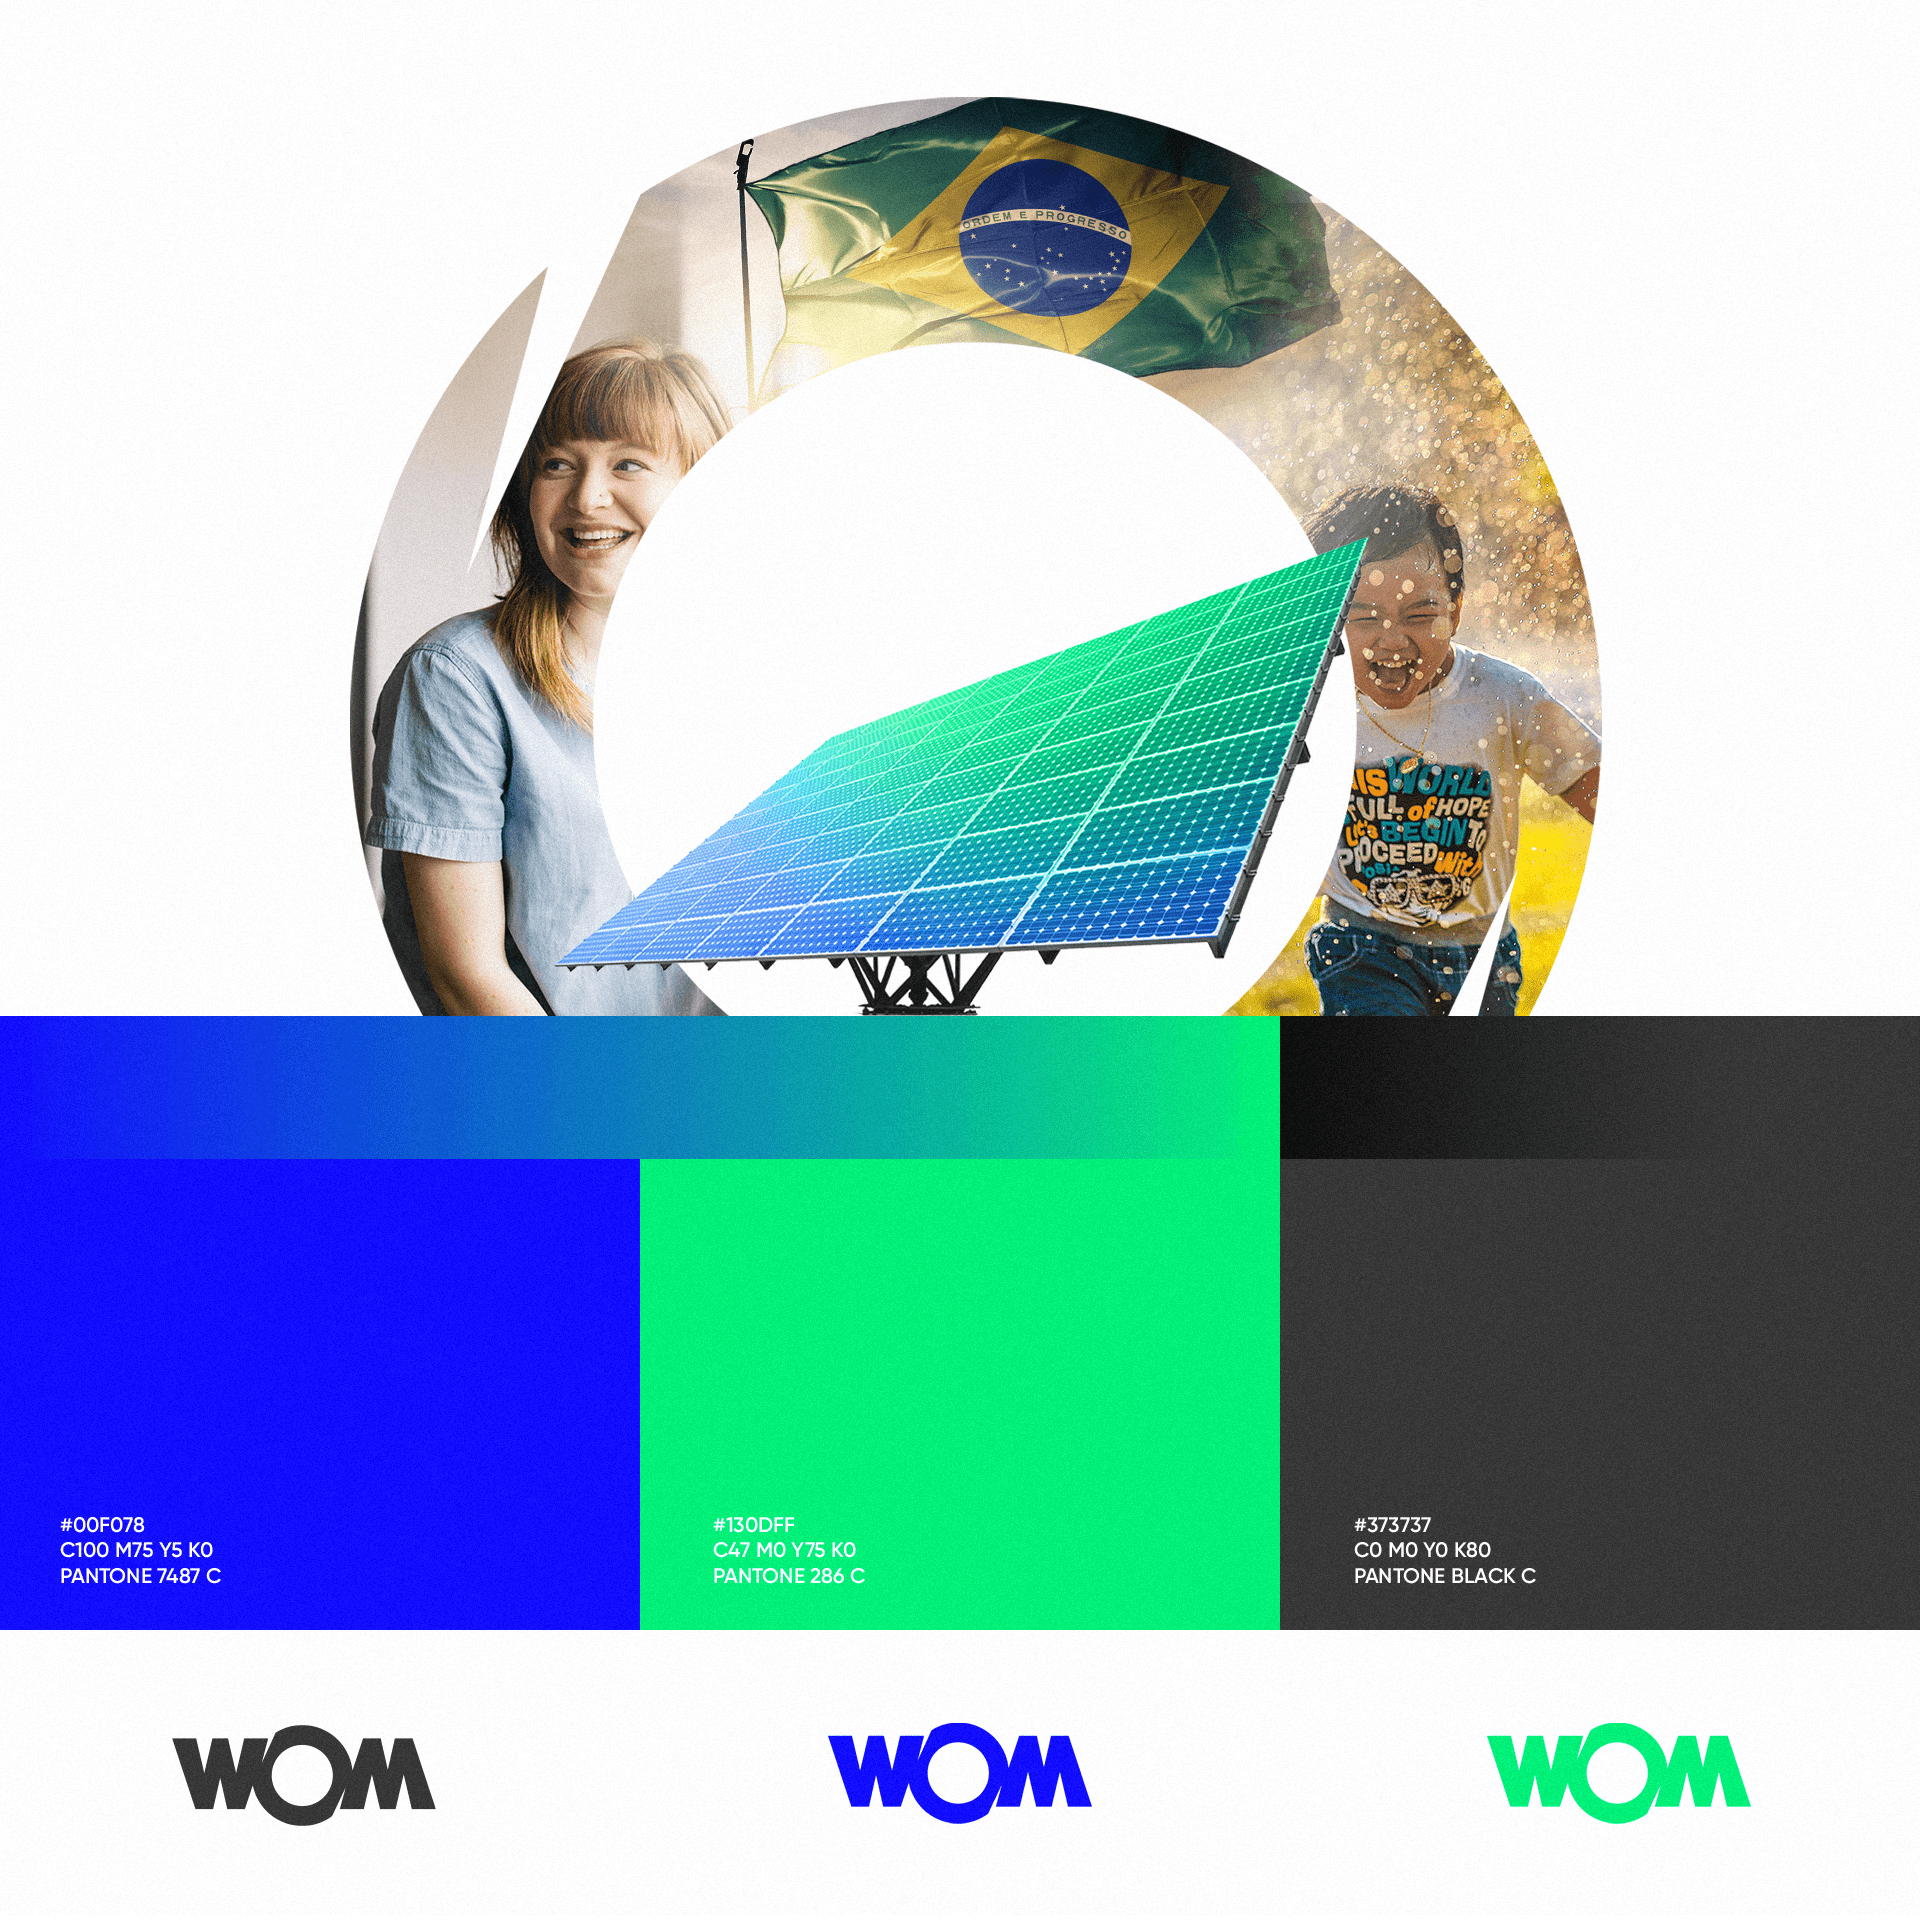 WOM能源品牌形象设计